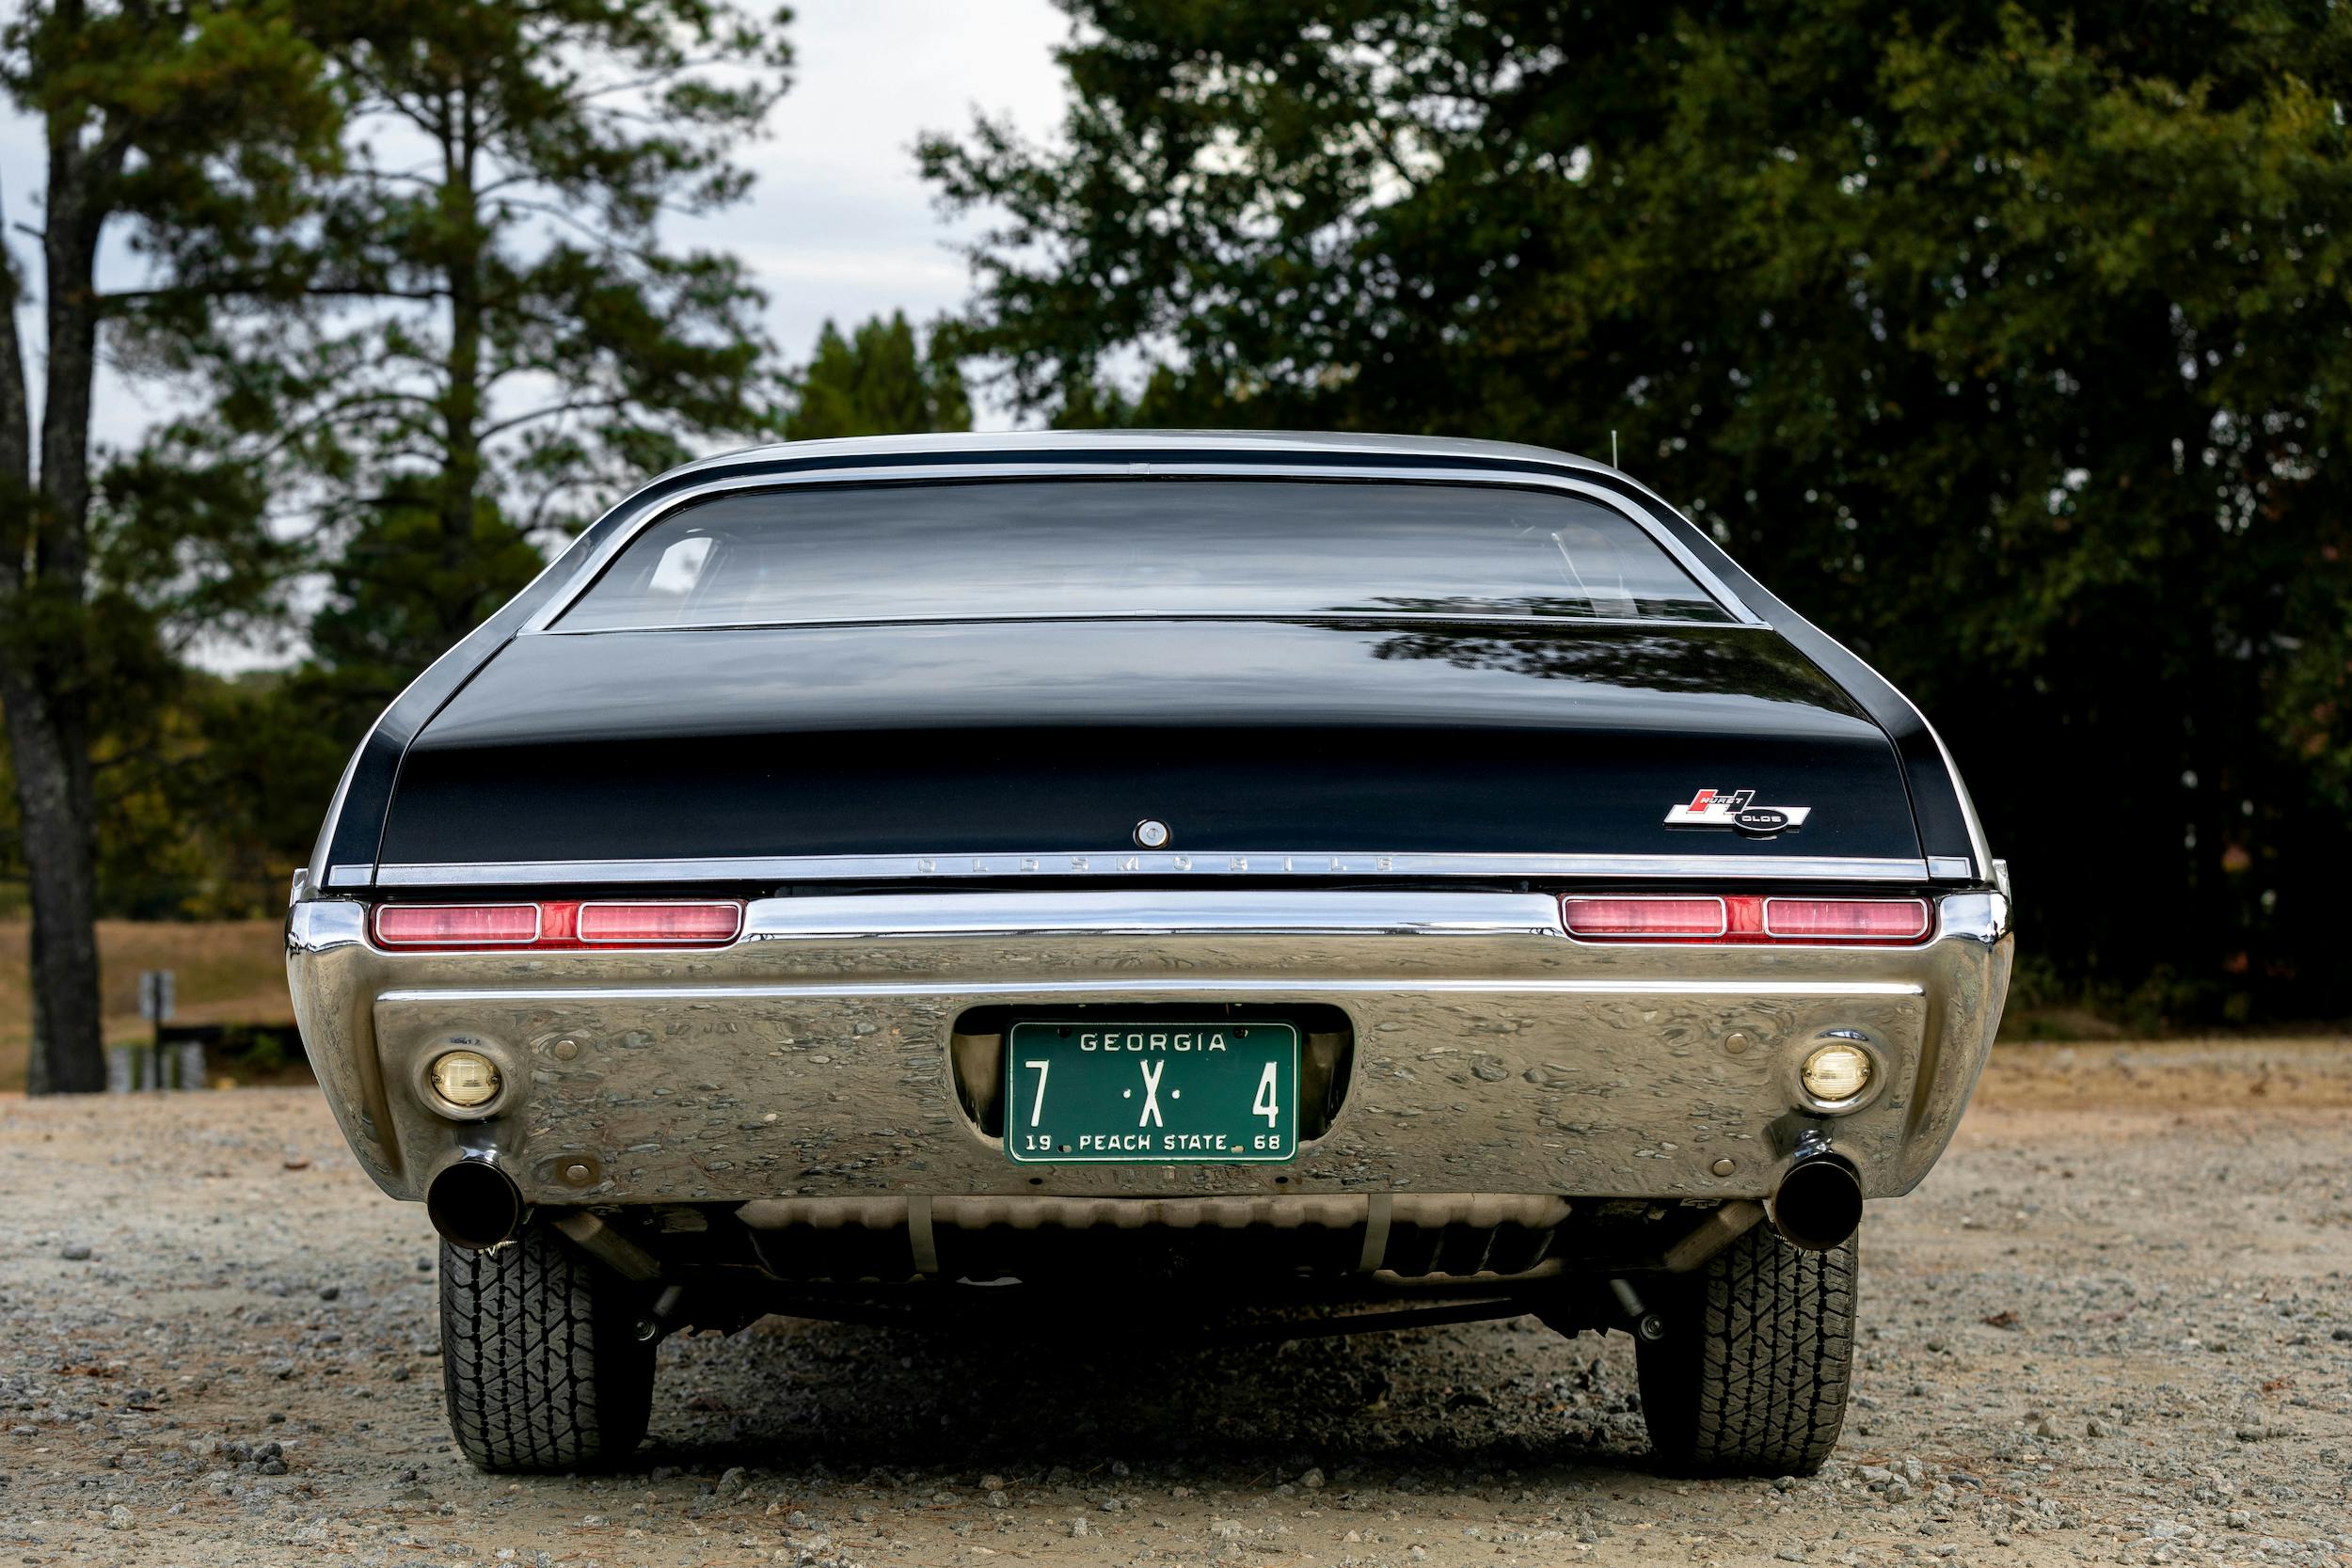 1968 Hurst Oldsmobile rear